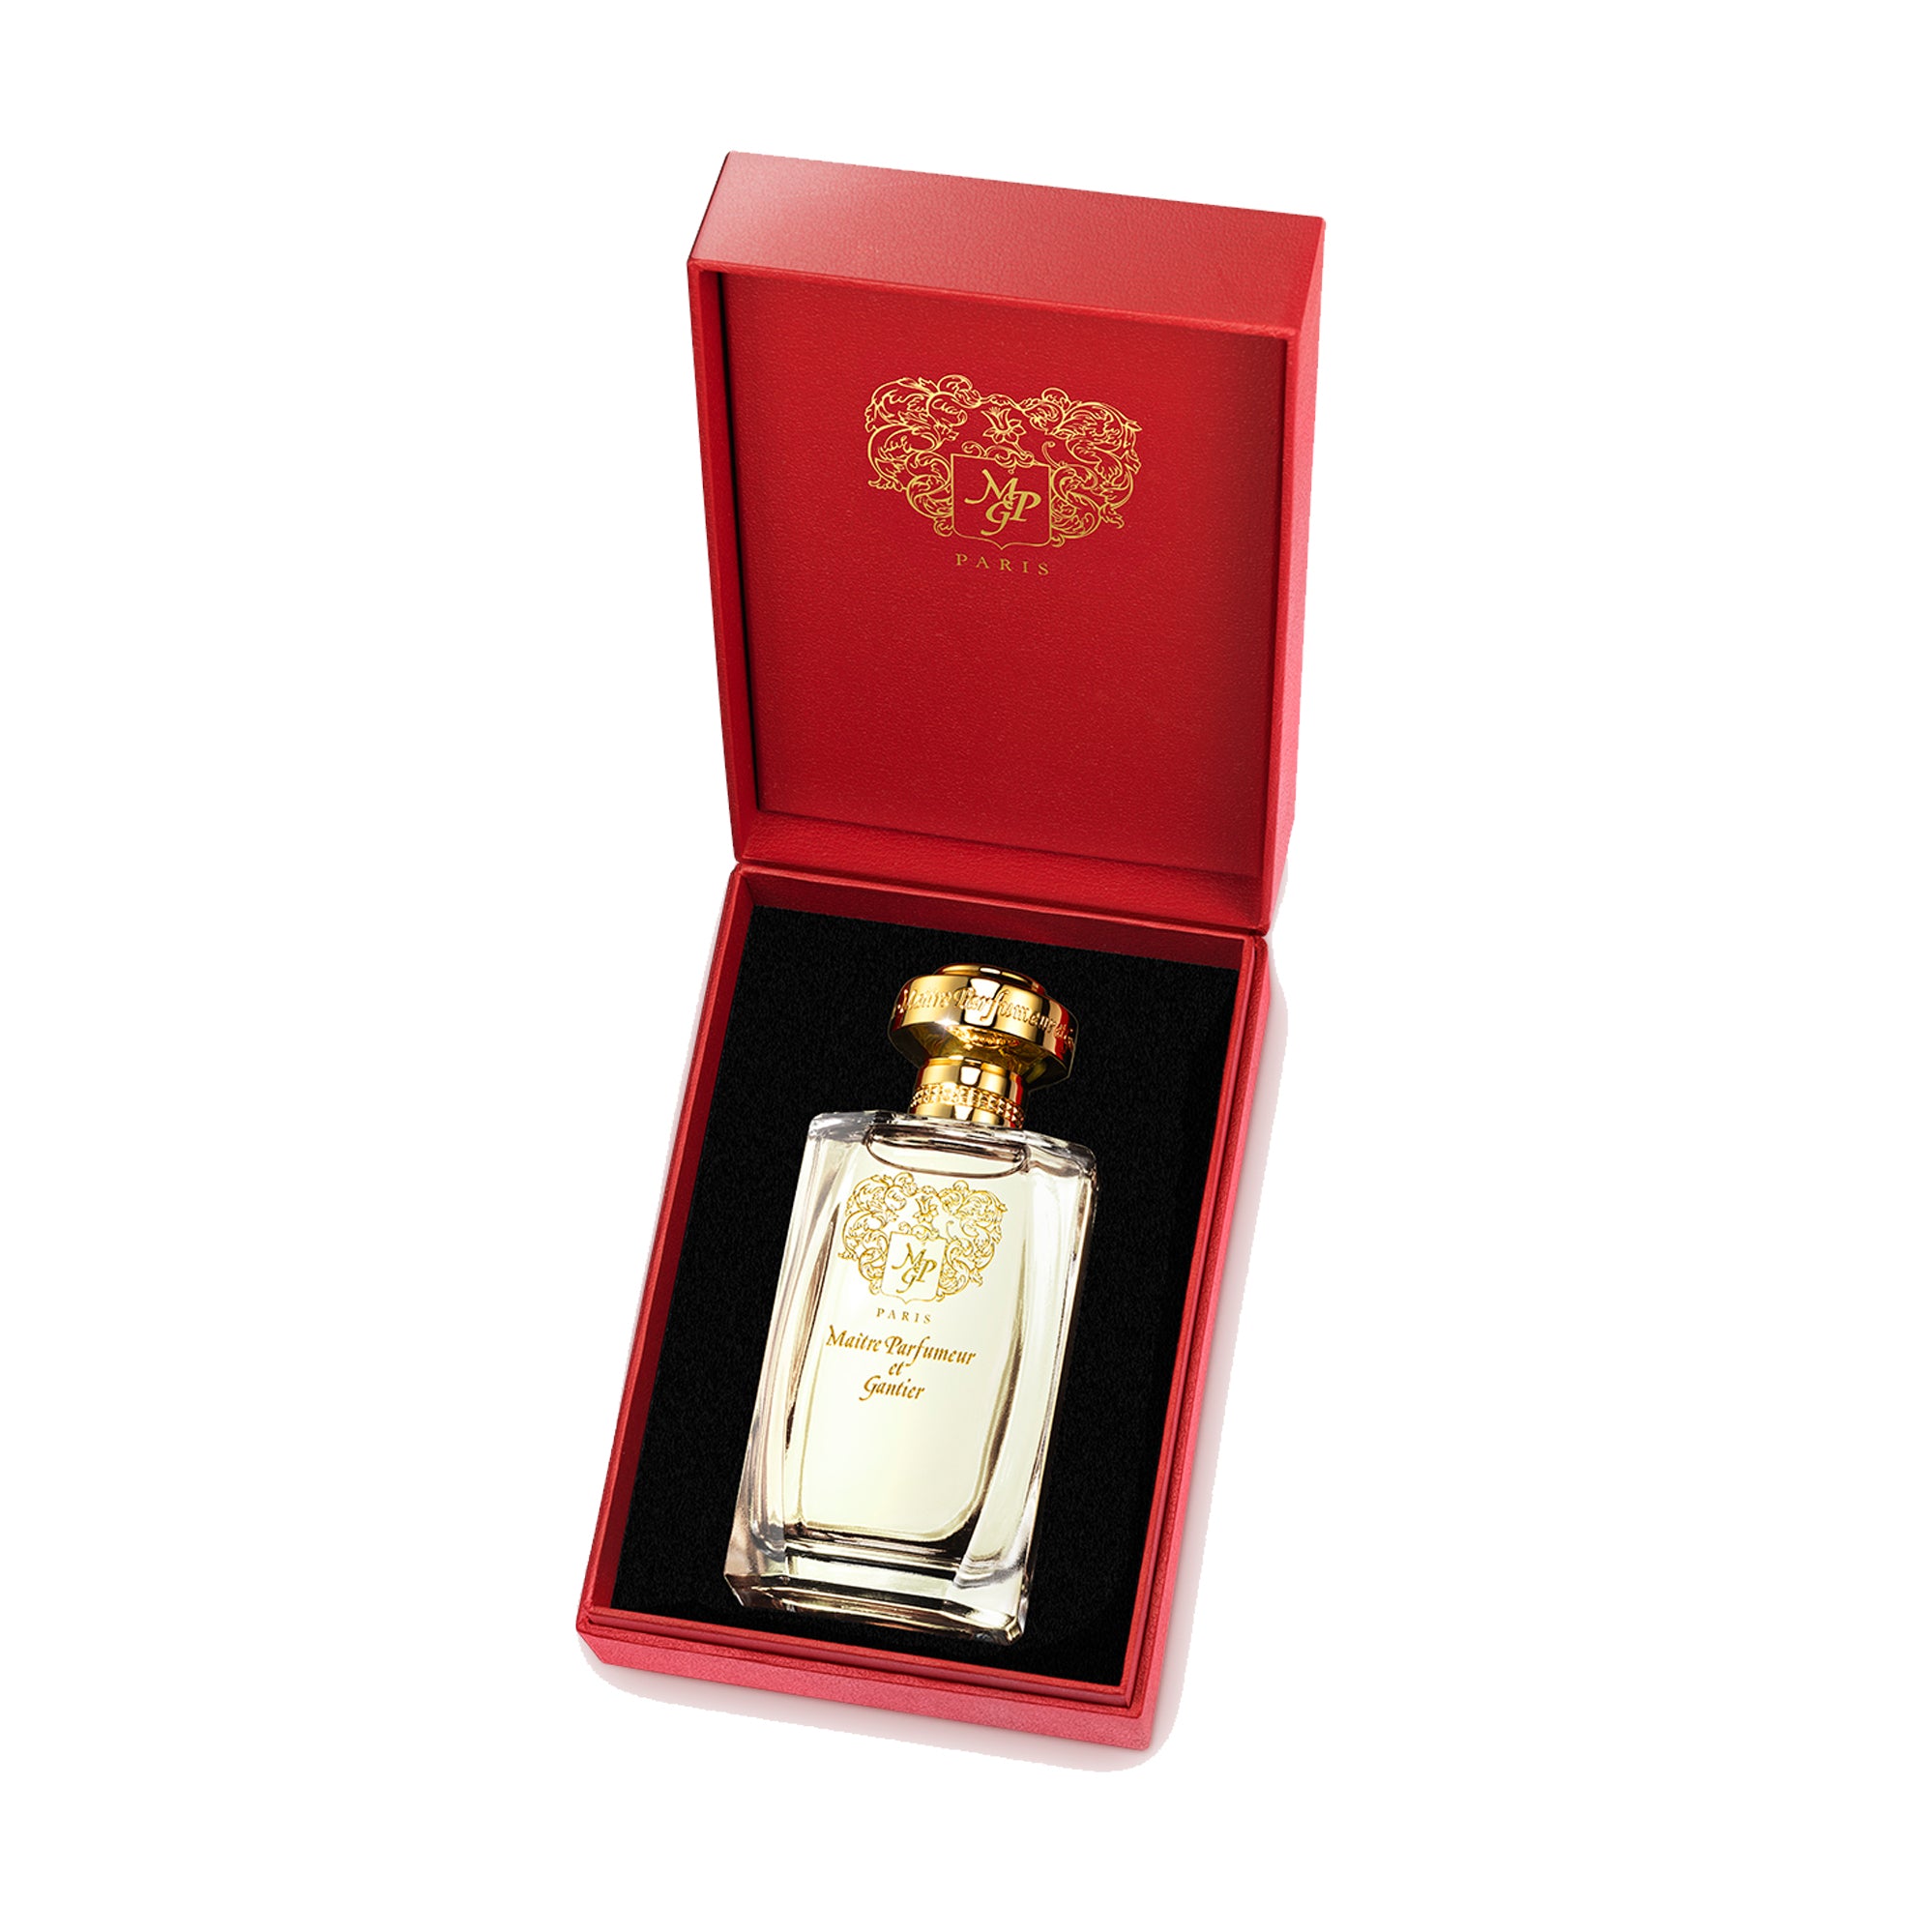 Ambre Précieux by Maître Parfumeur et Gantier » Reviews & Perfume Facts